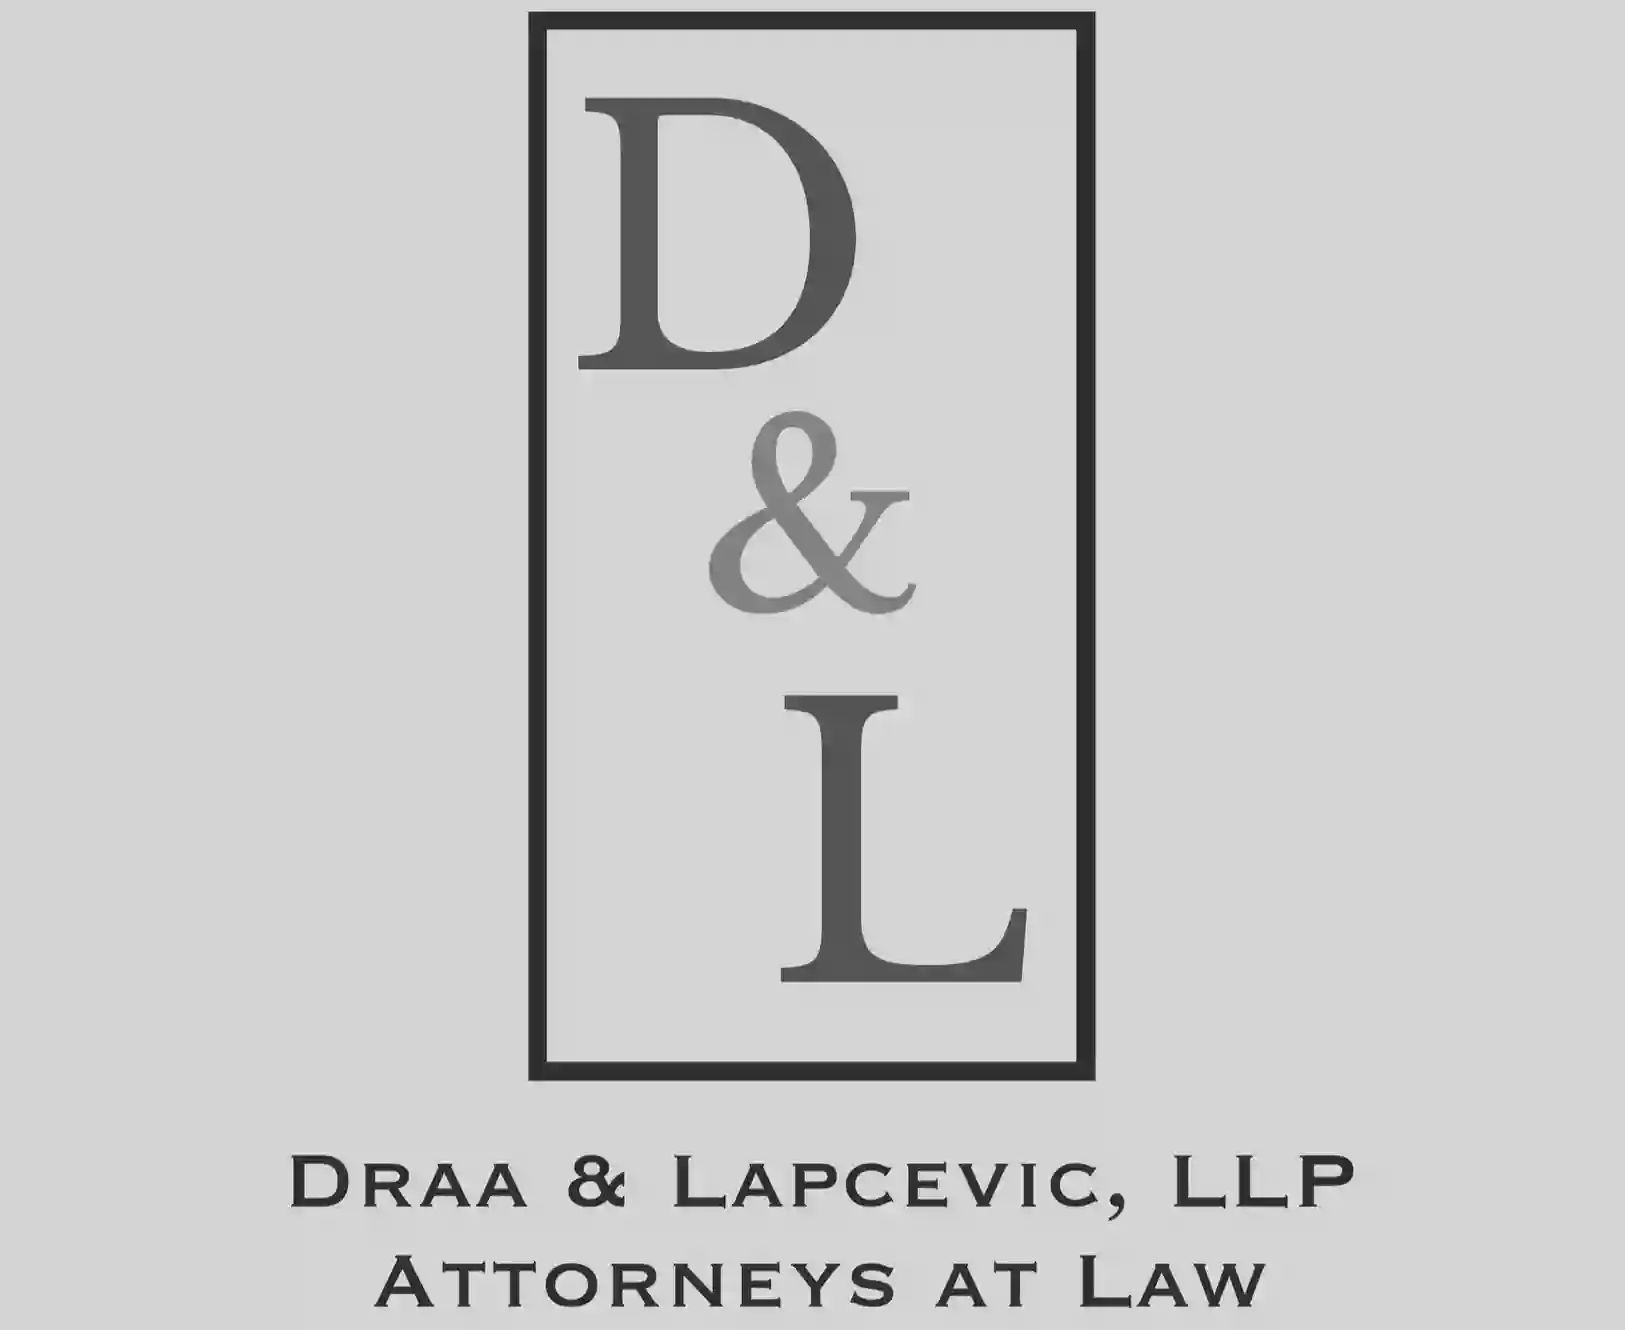 Draa & Lapcevic, LLP